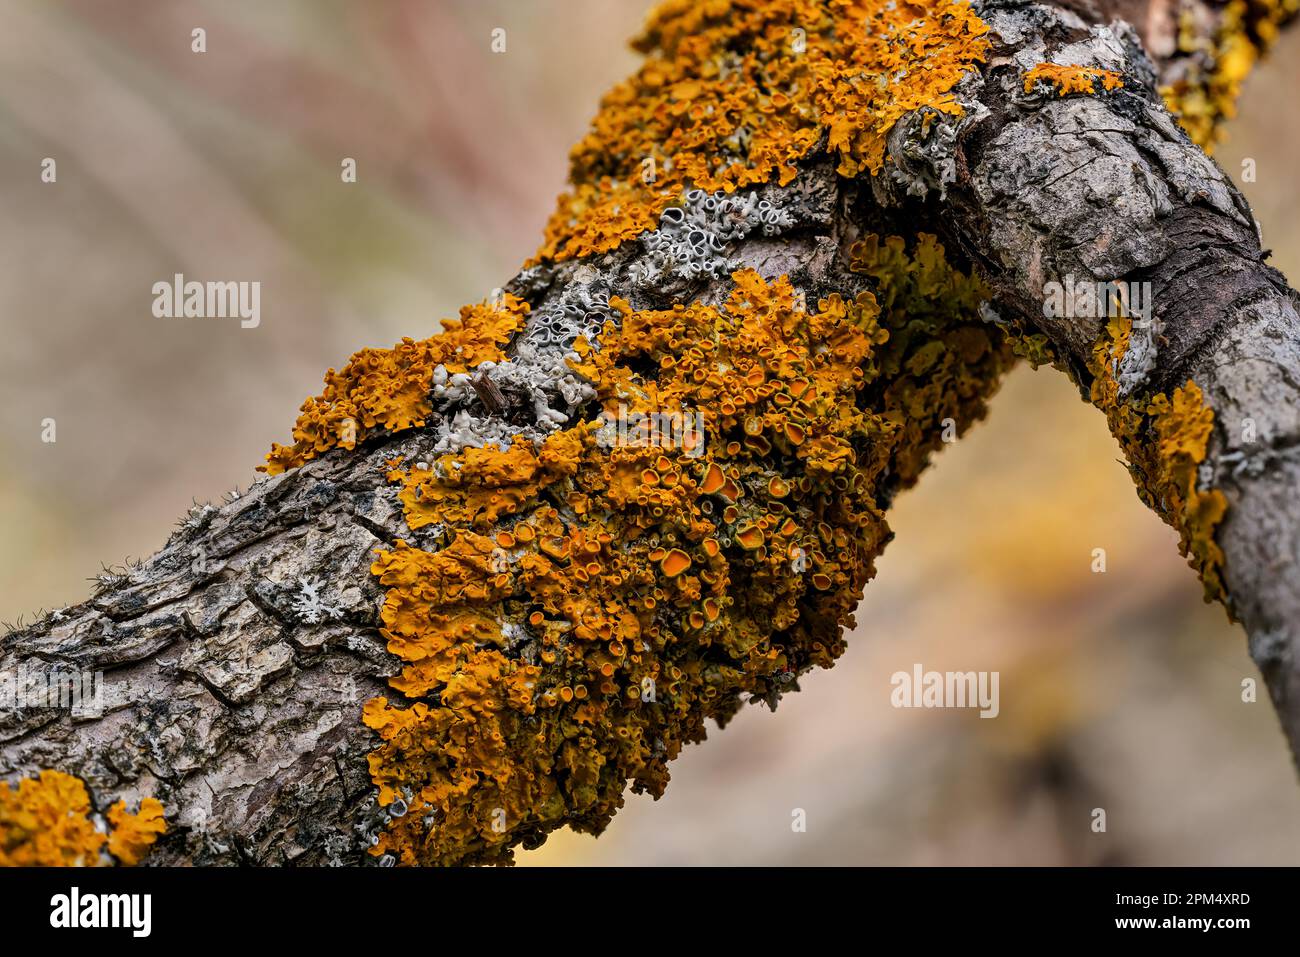 Lichen jaune orangé maritime - Xanthoria parietina et quelques physodes Hypogymnia - croissant sur branche d'arbre sèche, détail de gros plan Banque D'Images